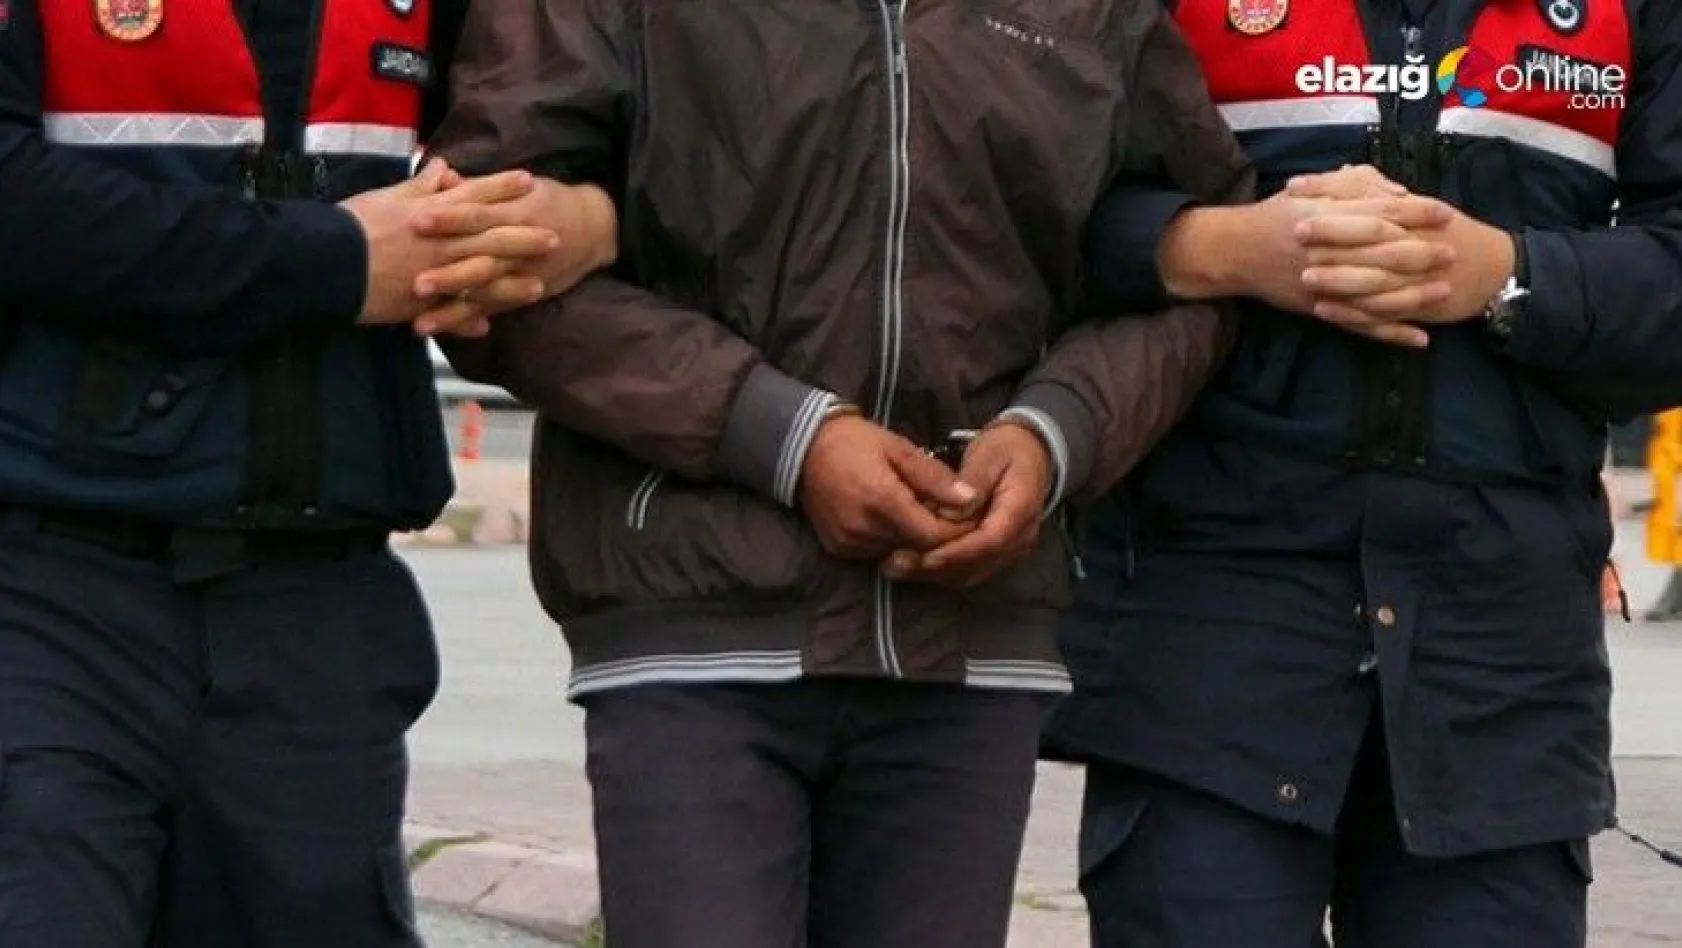 Elazığ'da cezaevinden firar eden zanlı Mardin'de yakalandı